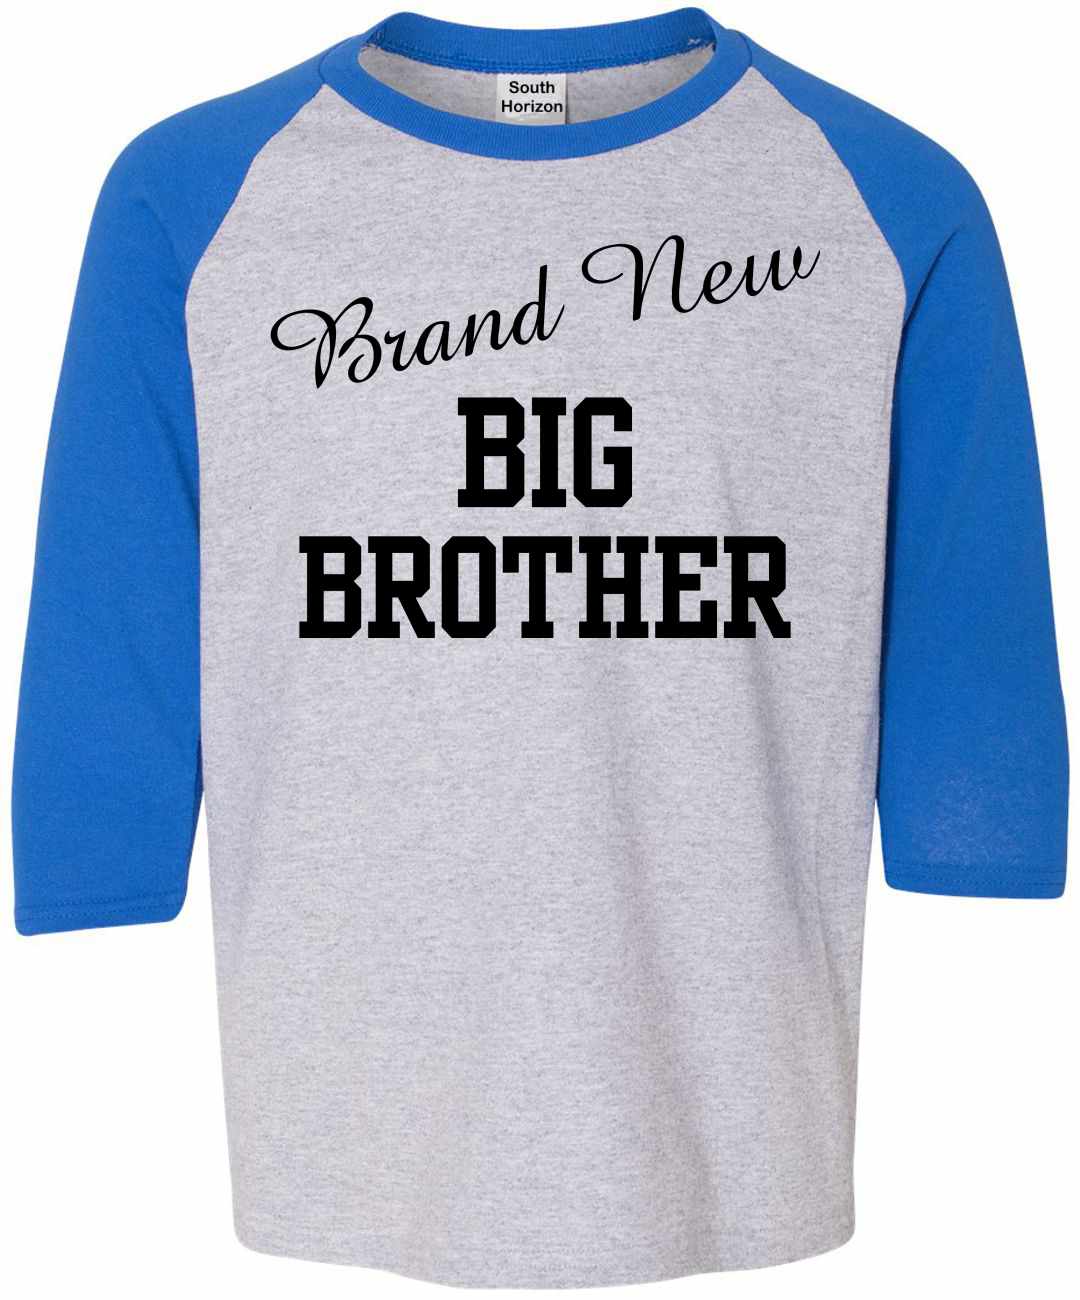 Brand New Big Brother on Youth Baseball Shirt (#999-212)